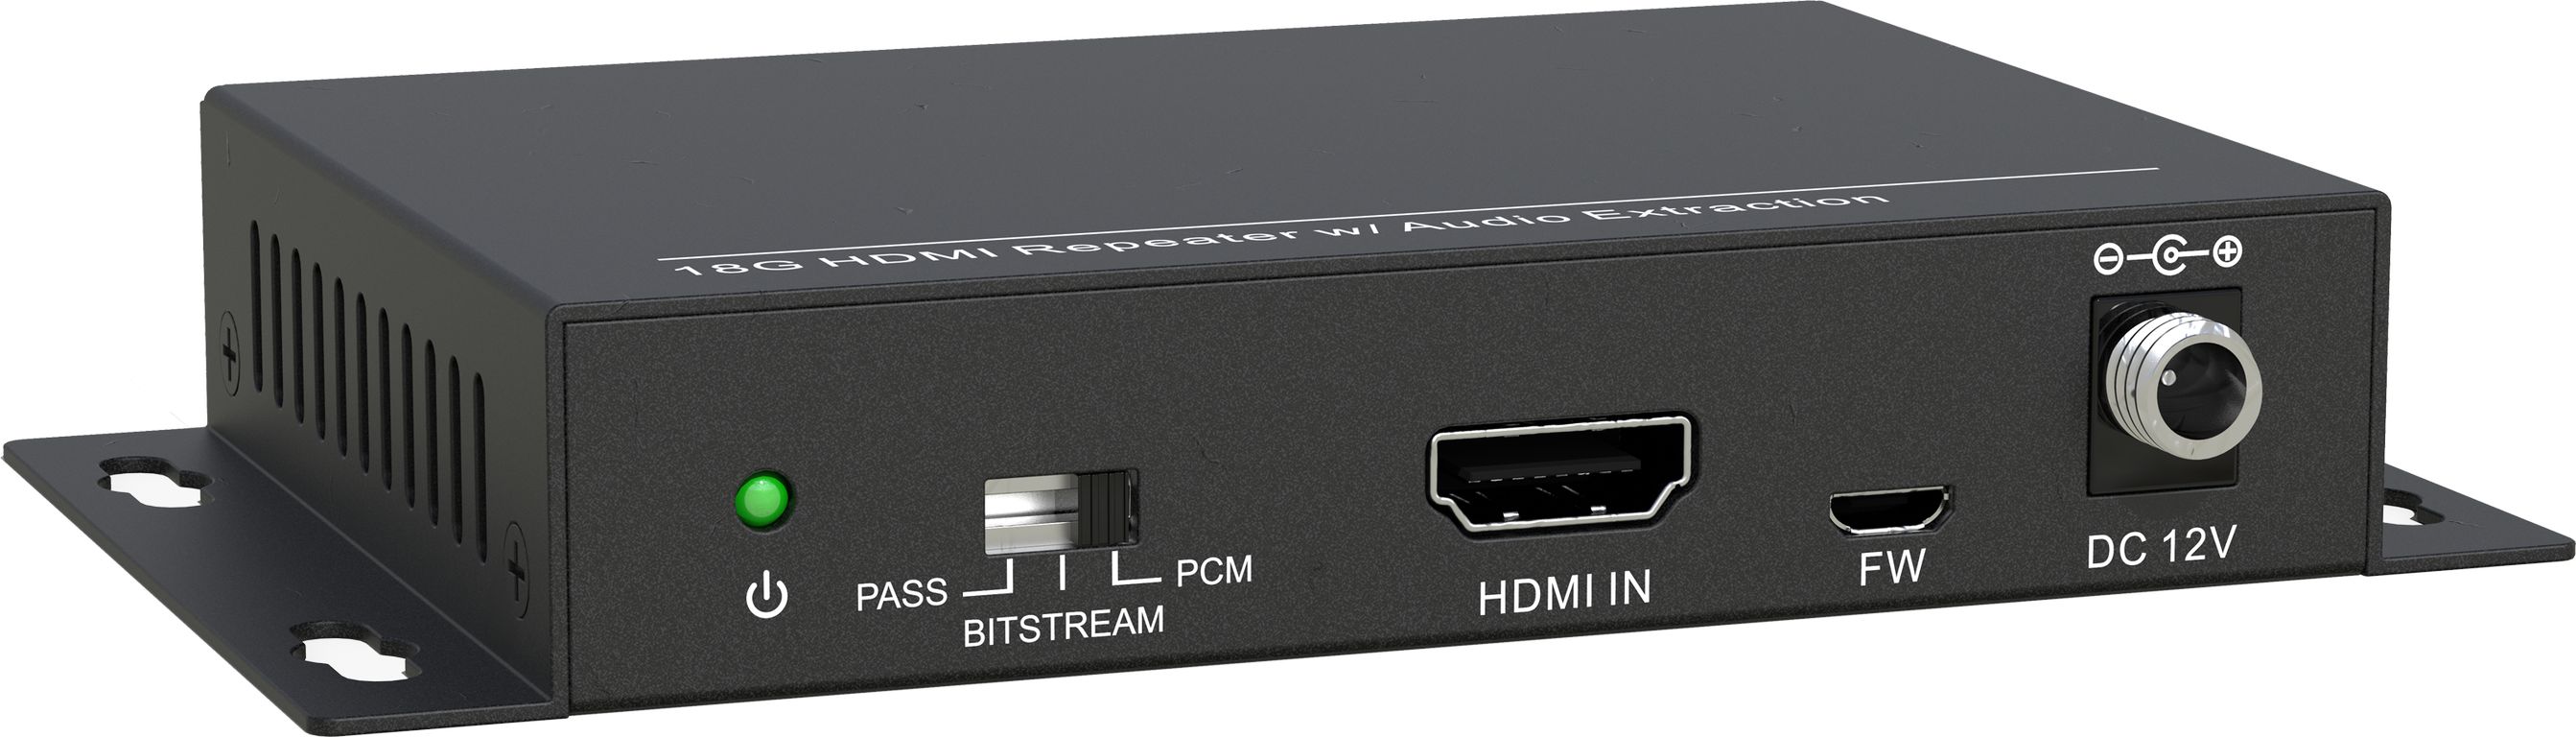 HDMI коммутаторы, разветвители, повторители Digis SS-AC1-4K2 hdmi коммутаторы разветвители повторители ecler veo sph42